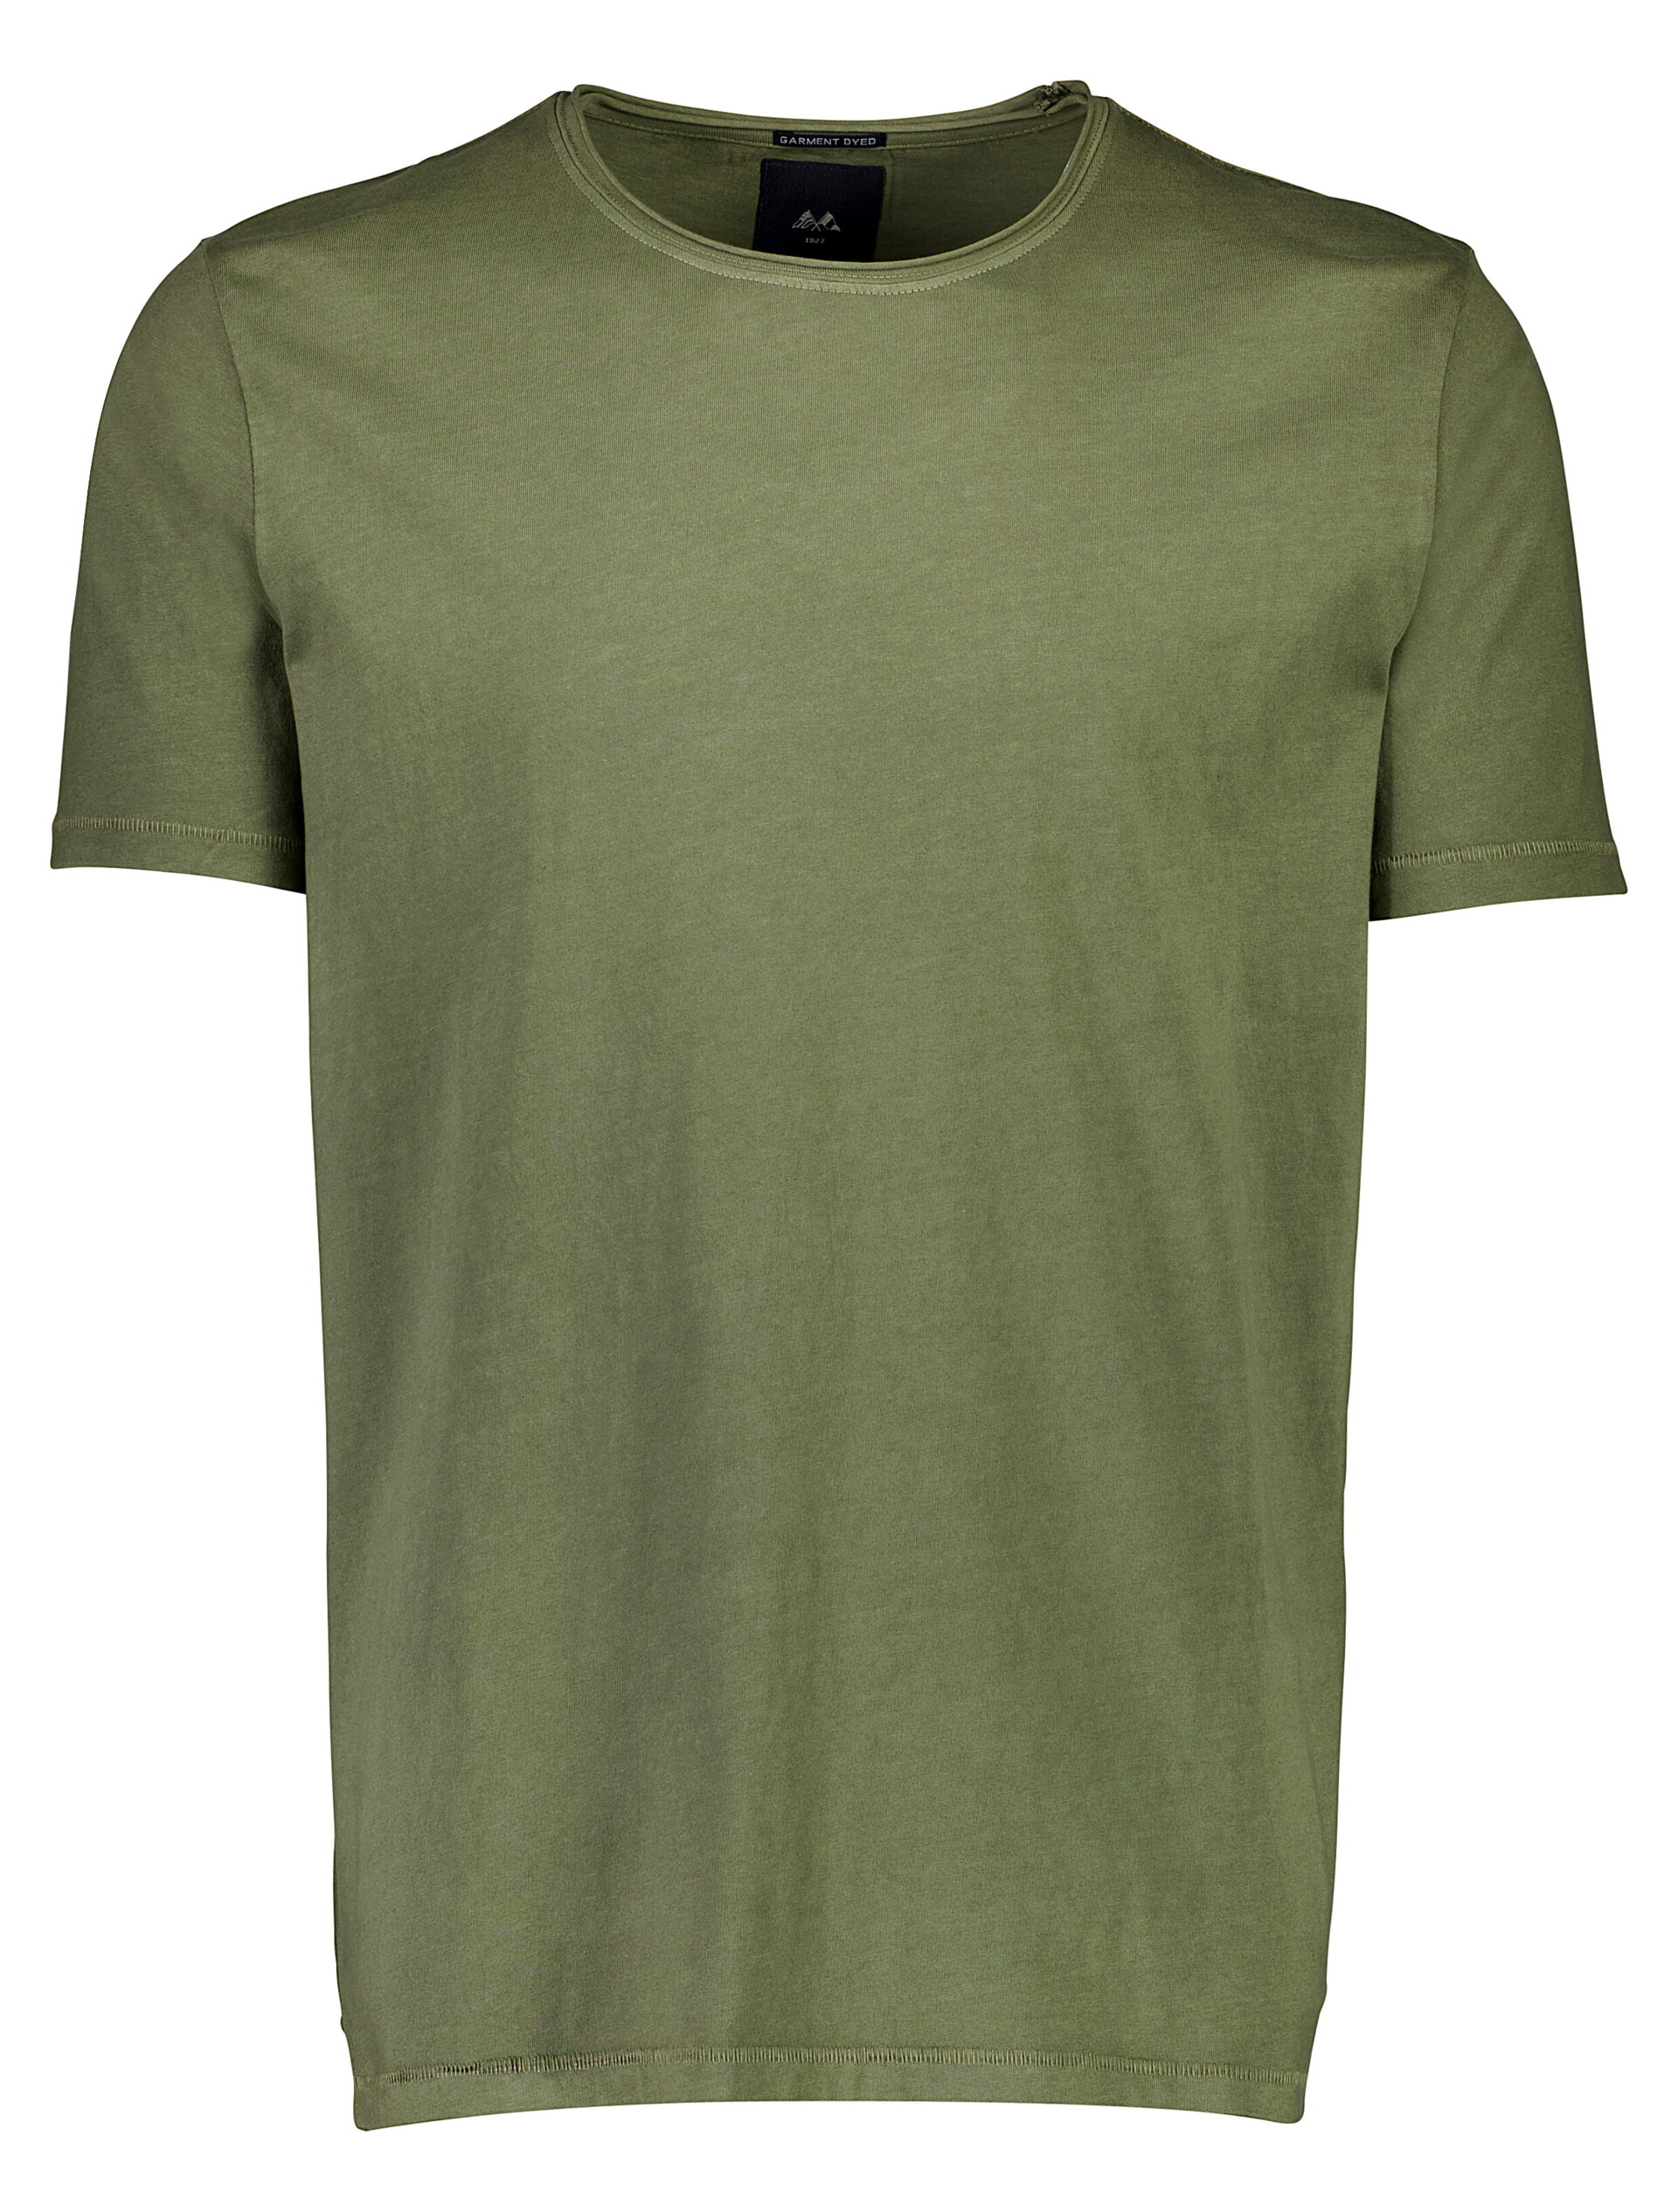 Lindbergh T-shirt groen / dusty army